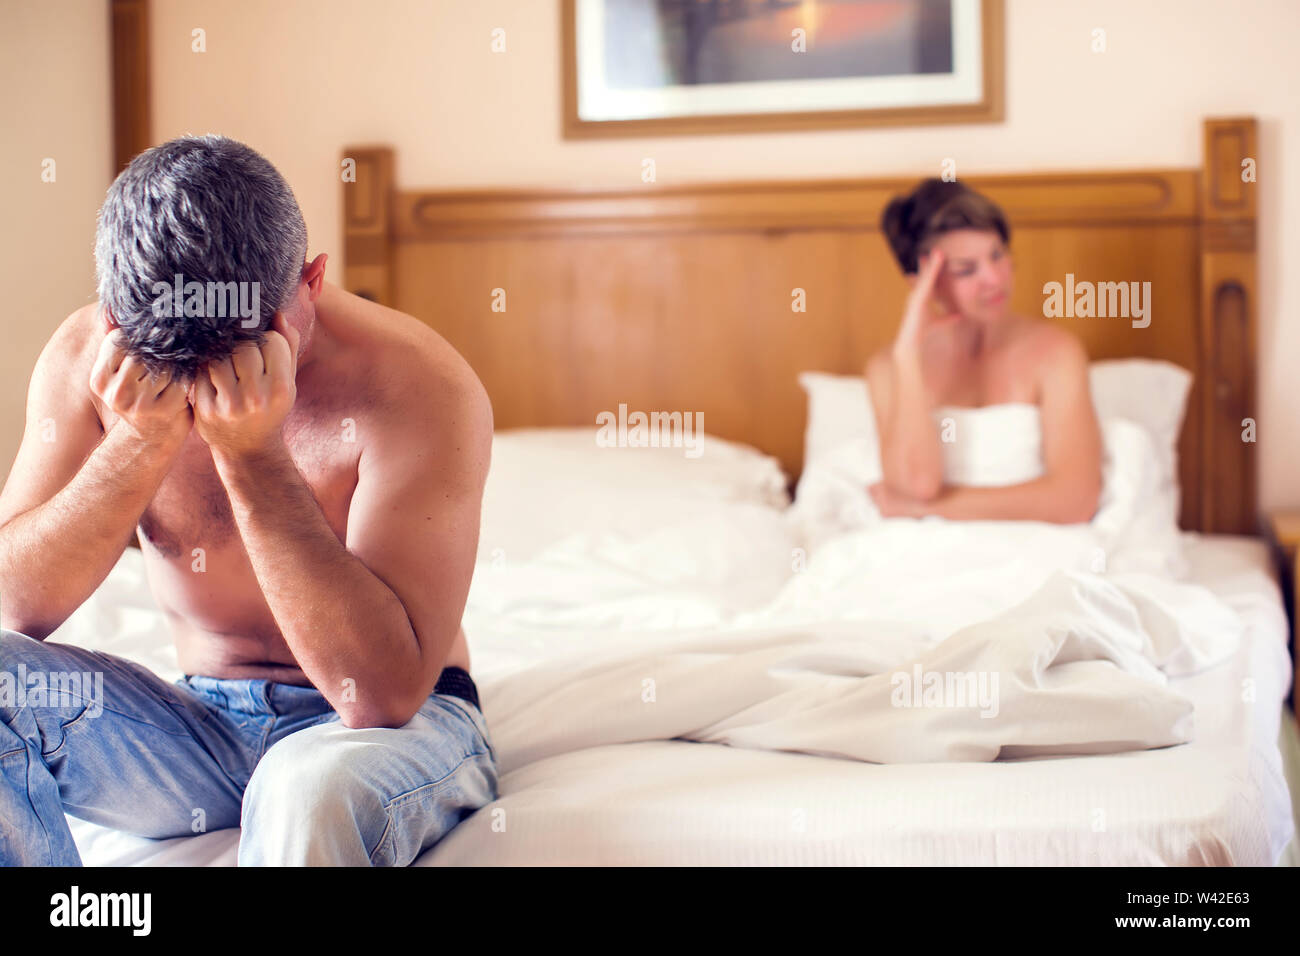 Leute, Beziehung Schwierigkeiten, Konflikte und Familie Konzept - unglückliches Paar Probleme im Schlafzimmer Stockfoto